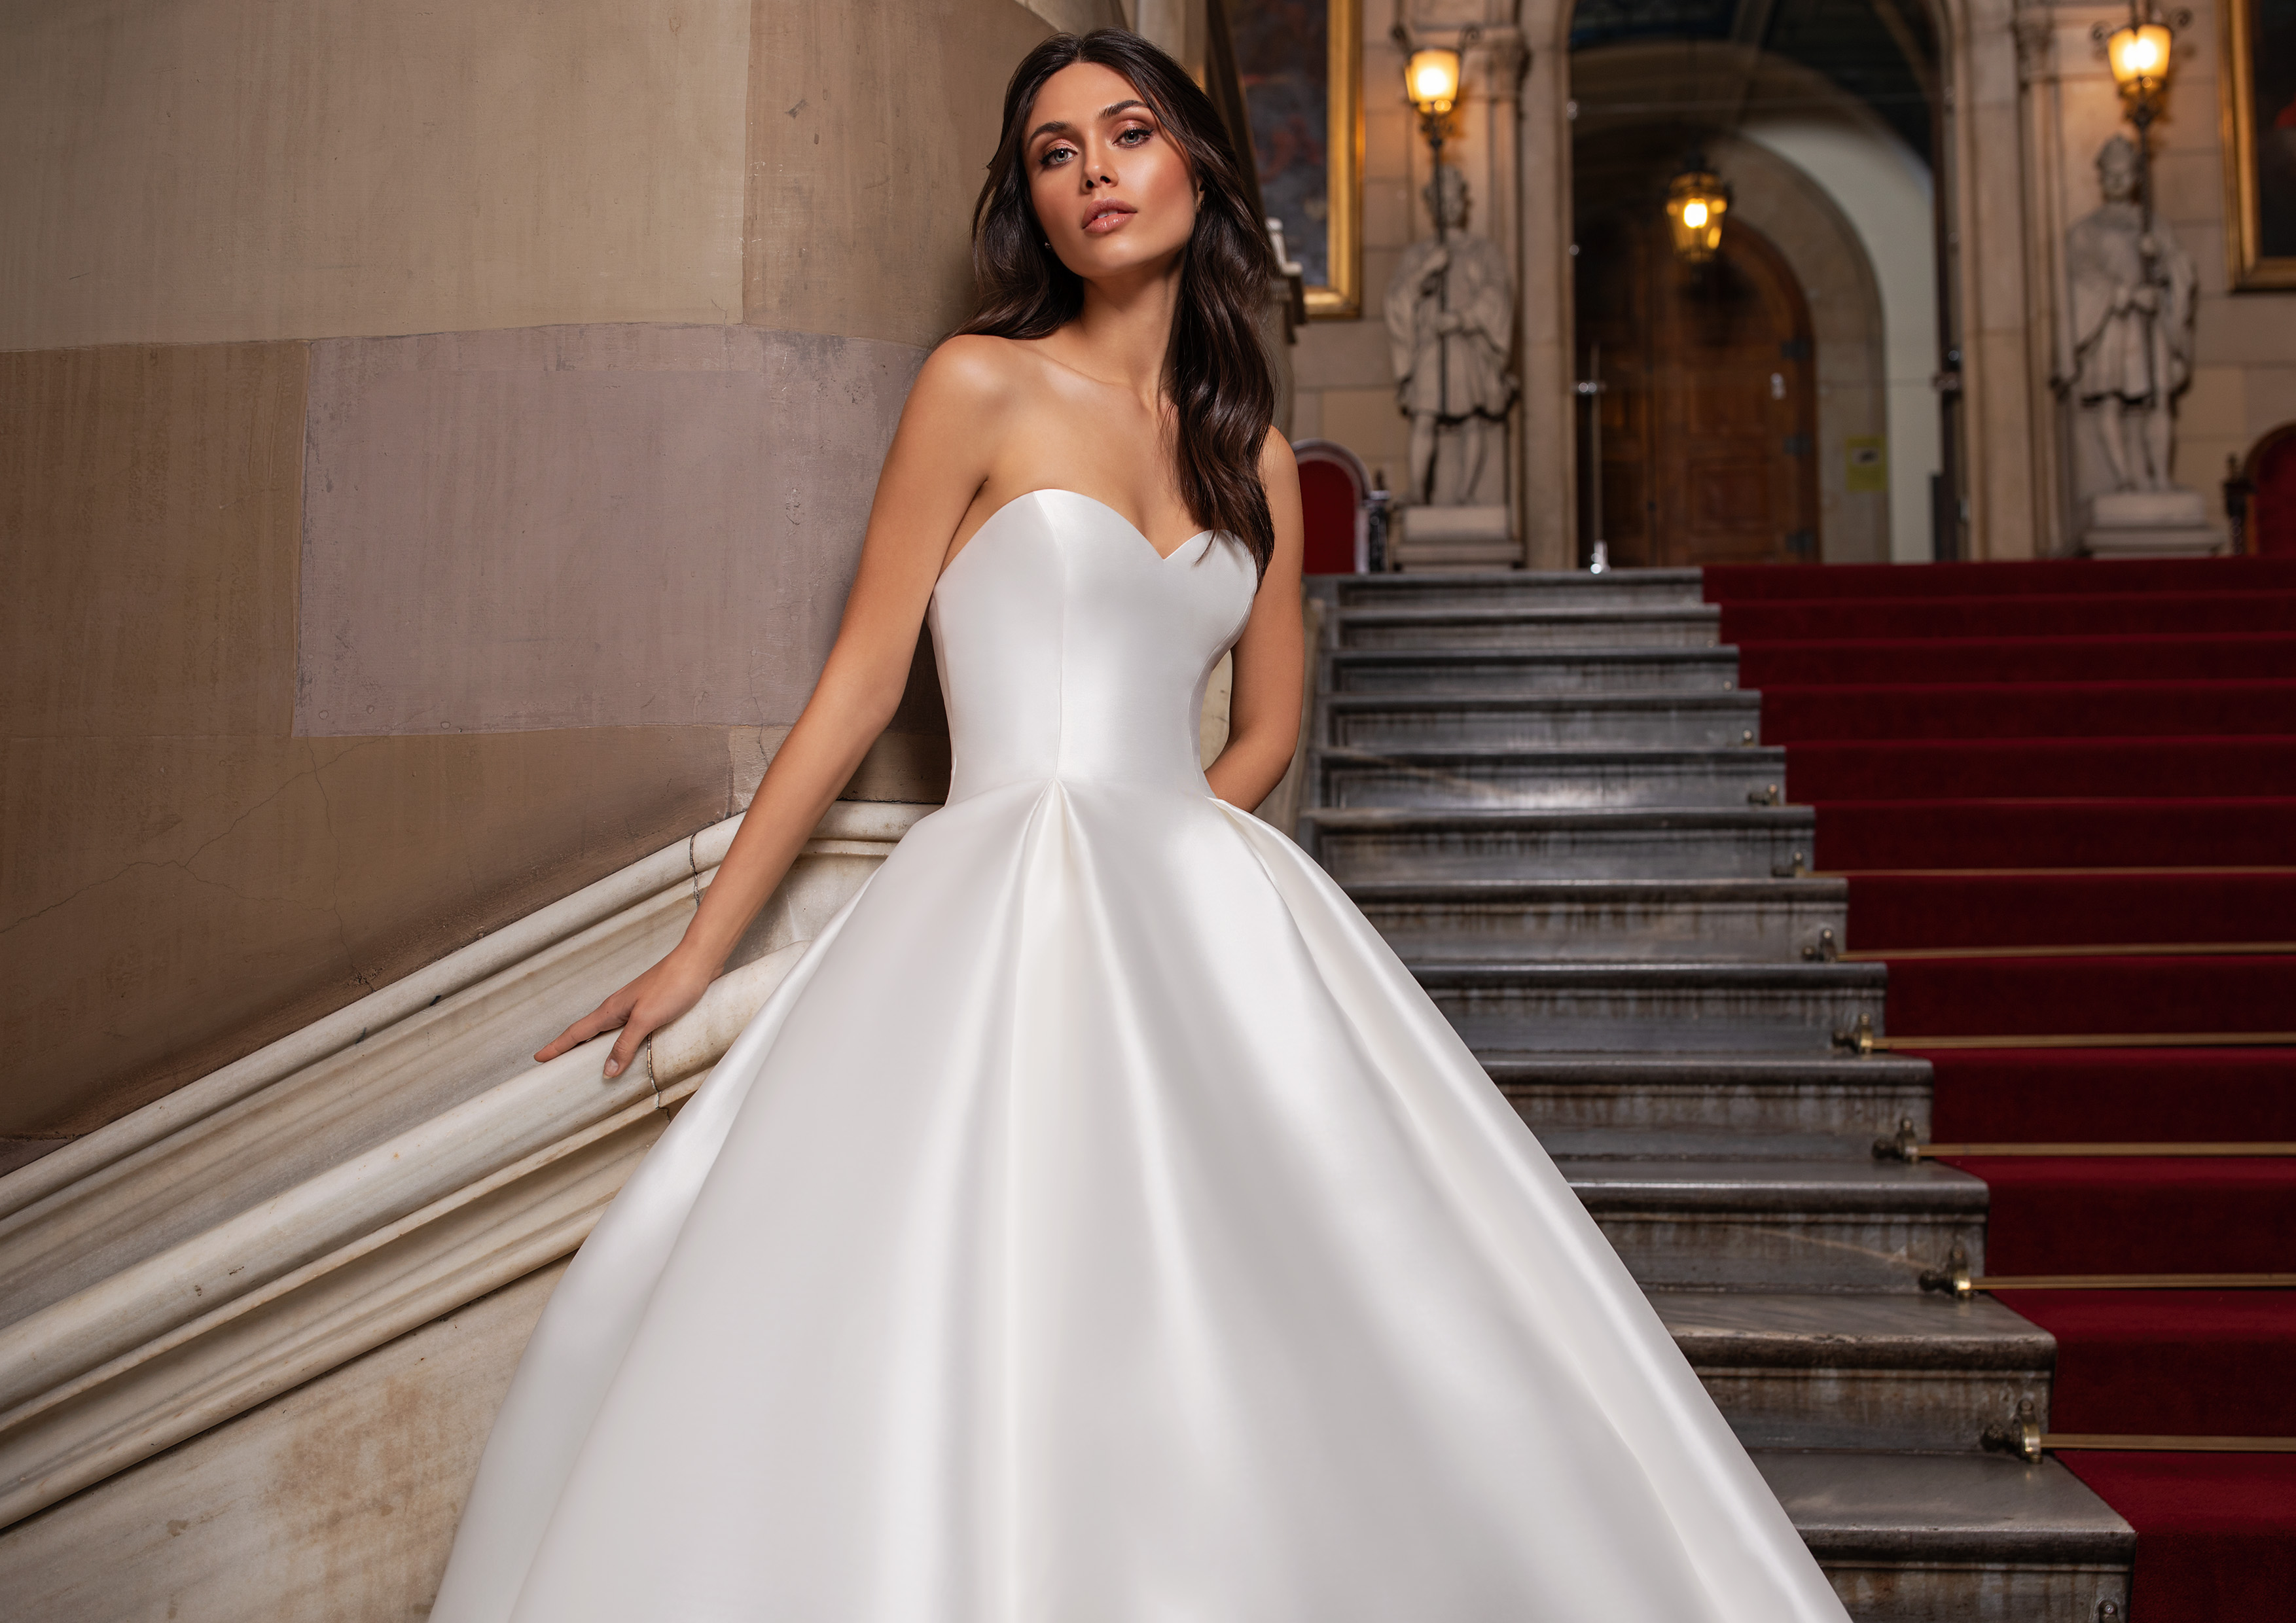 Vestido de noiva modelo Close da coleção Pronovias 2021 Cruise Collection